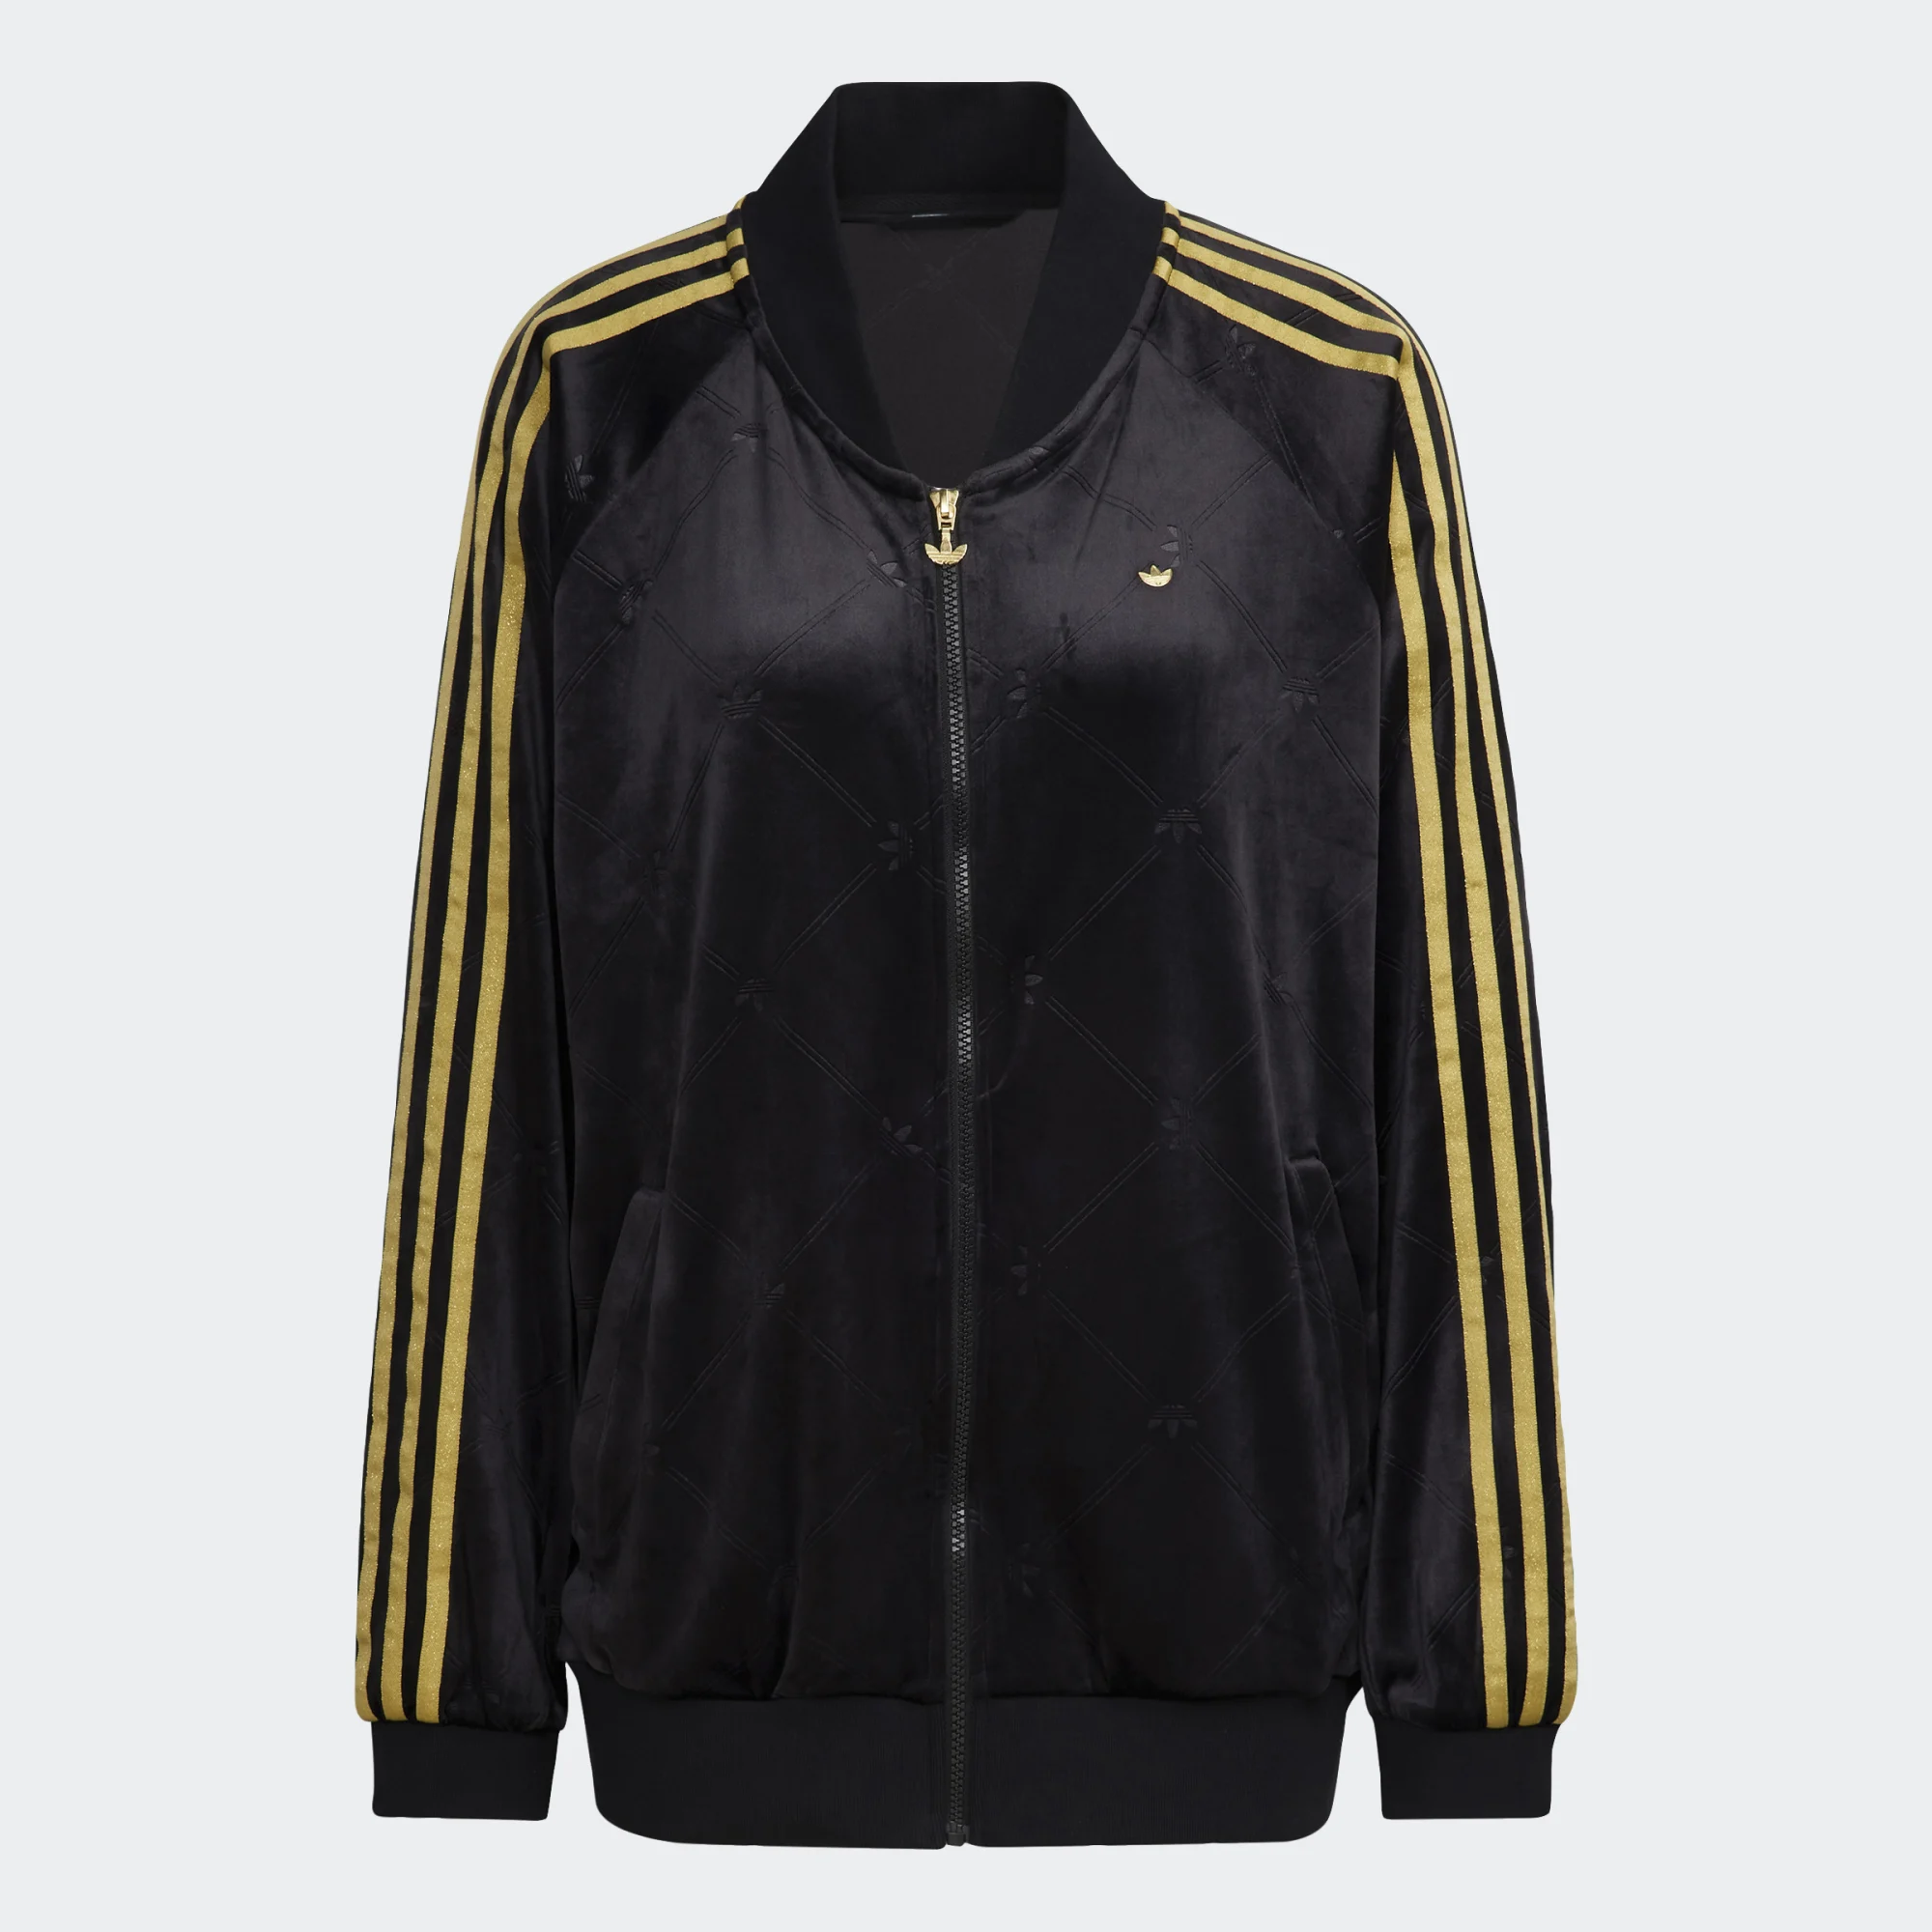 Толстовка Adidas для женщин, H18020, на молнии, black, размер 36